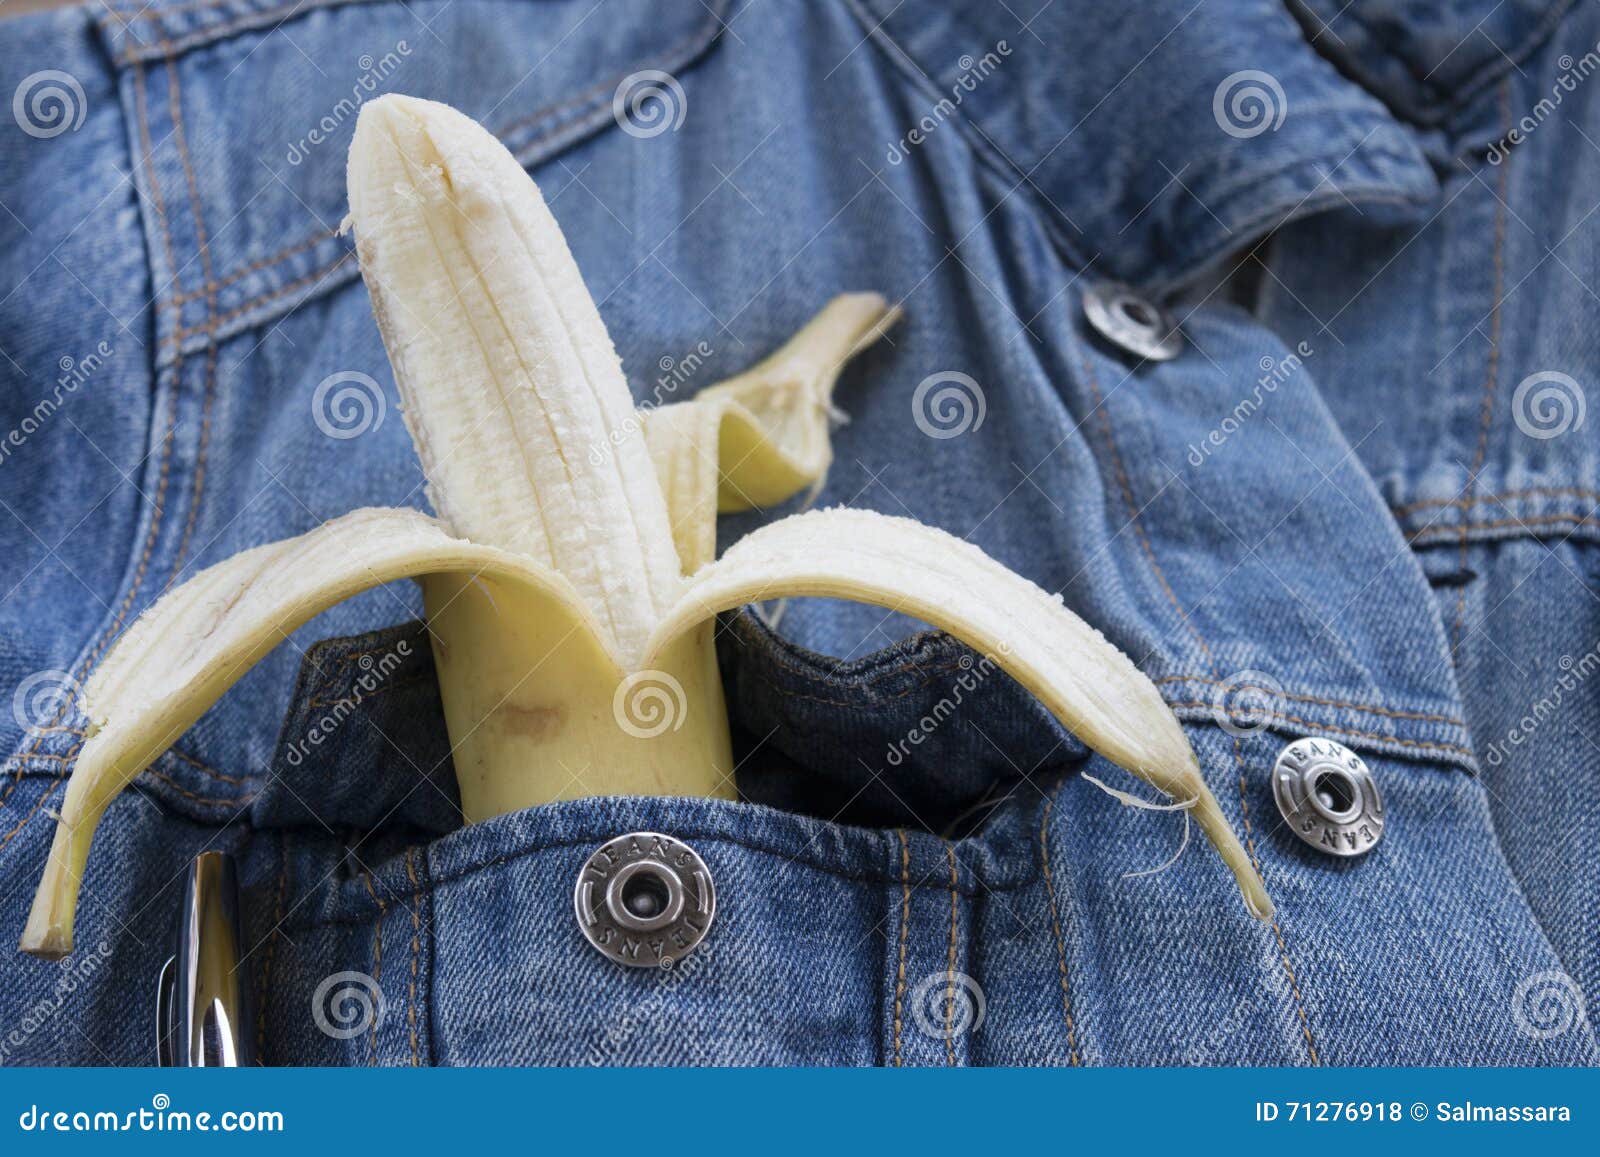 banana breast pocket jeans jacket peeled denim 71276918